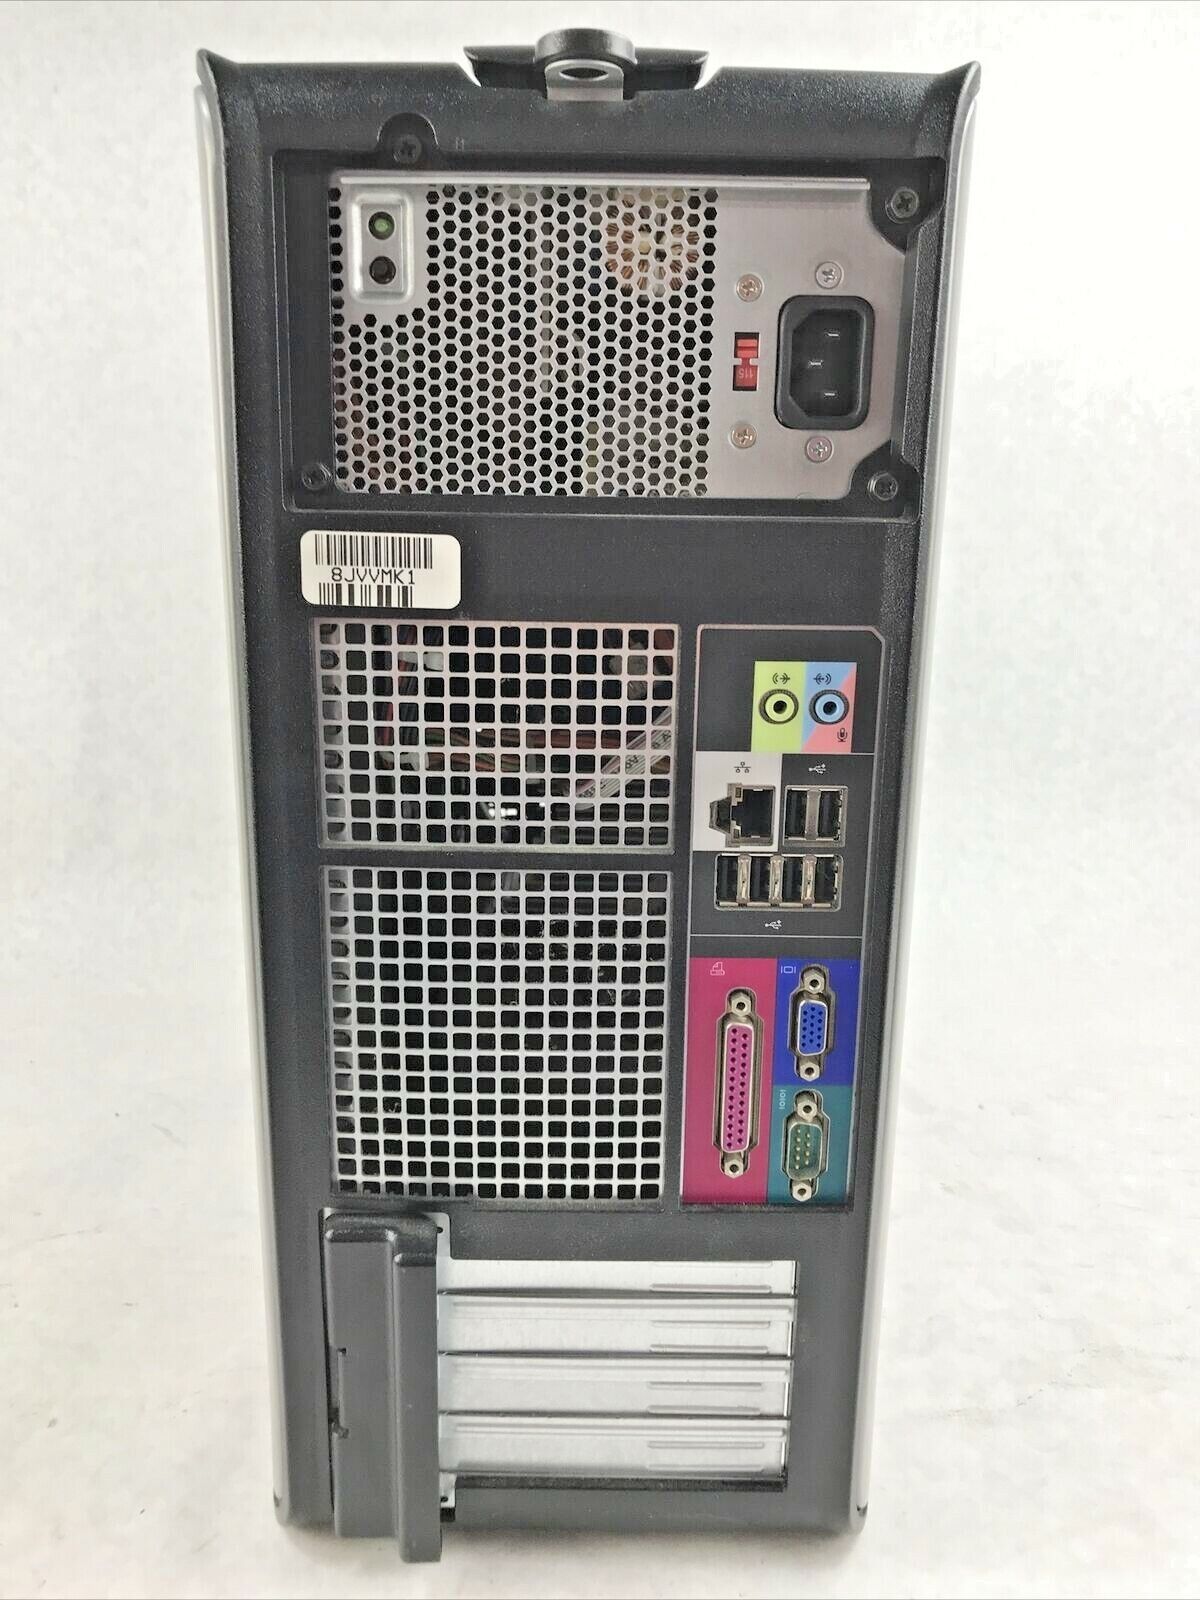 Dell Optiplex 360 Mini-Tower Intel Pentium E5200 2.50GHz 2GB RAM Win NO HD NO OS